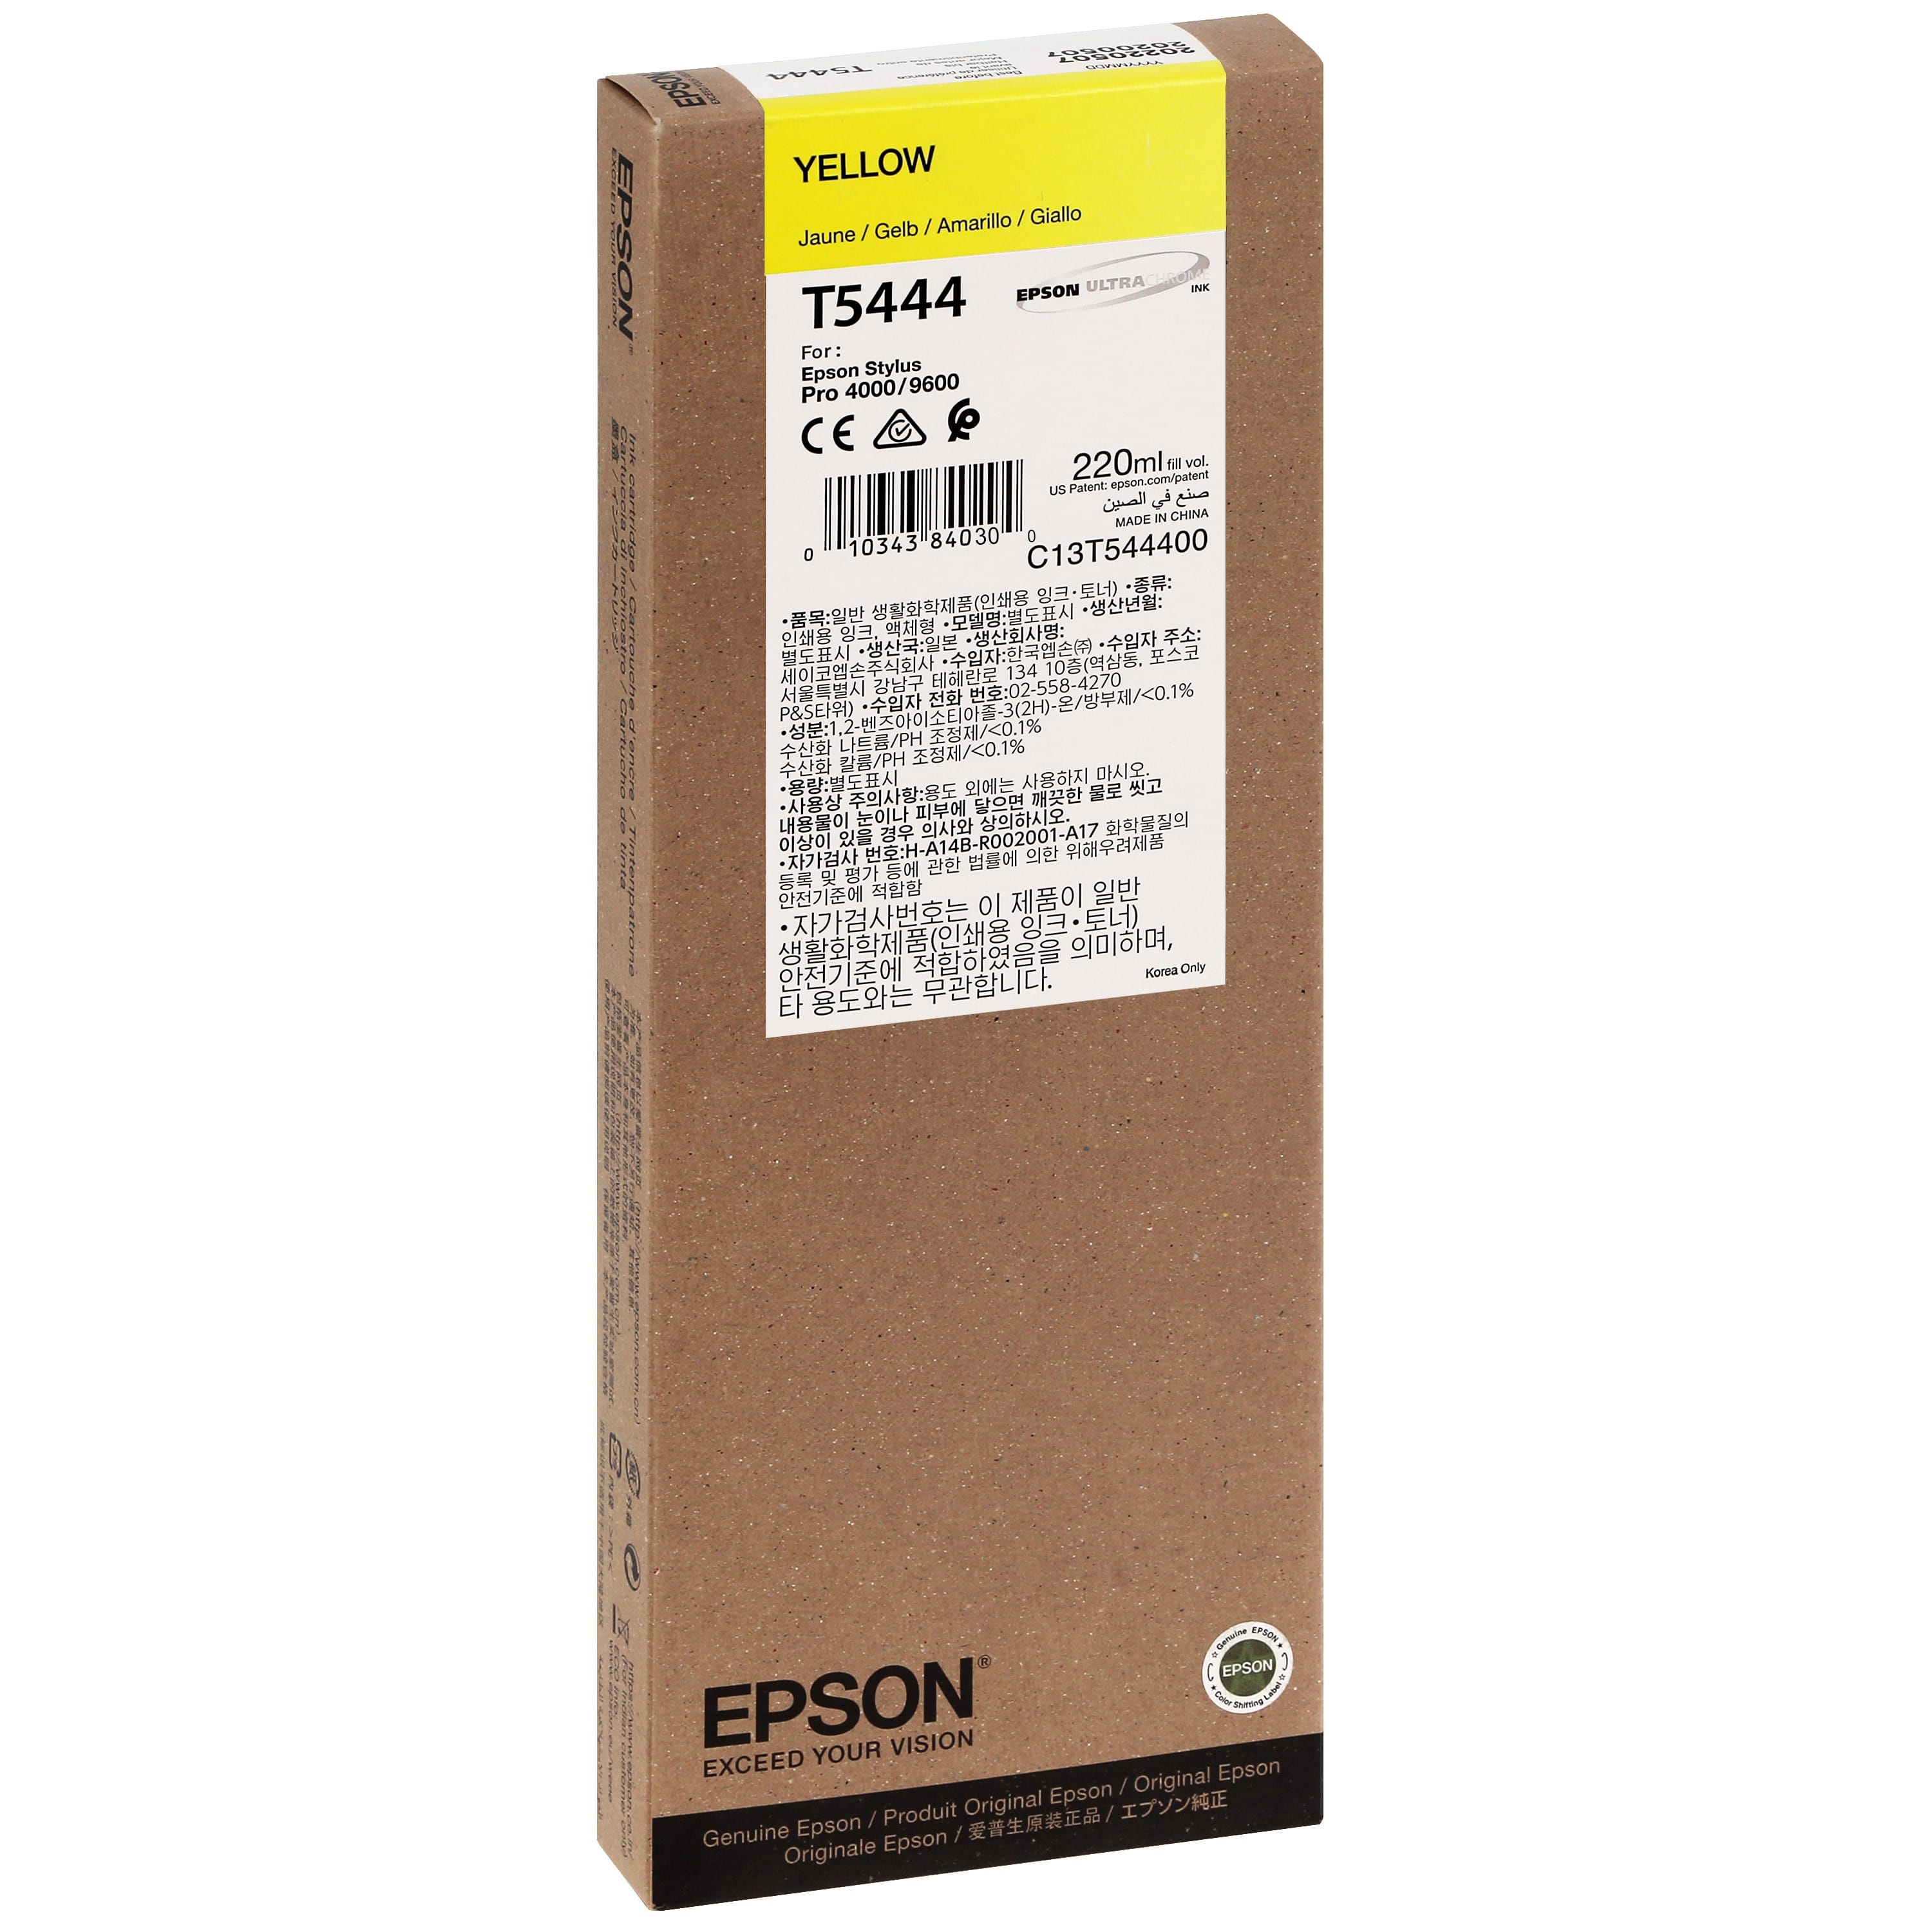 EPSON - Cartouche d'encre traceur T5444 Pour imprimante 4000/4400/7600/9600 Jaune - 220ml